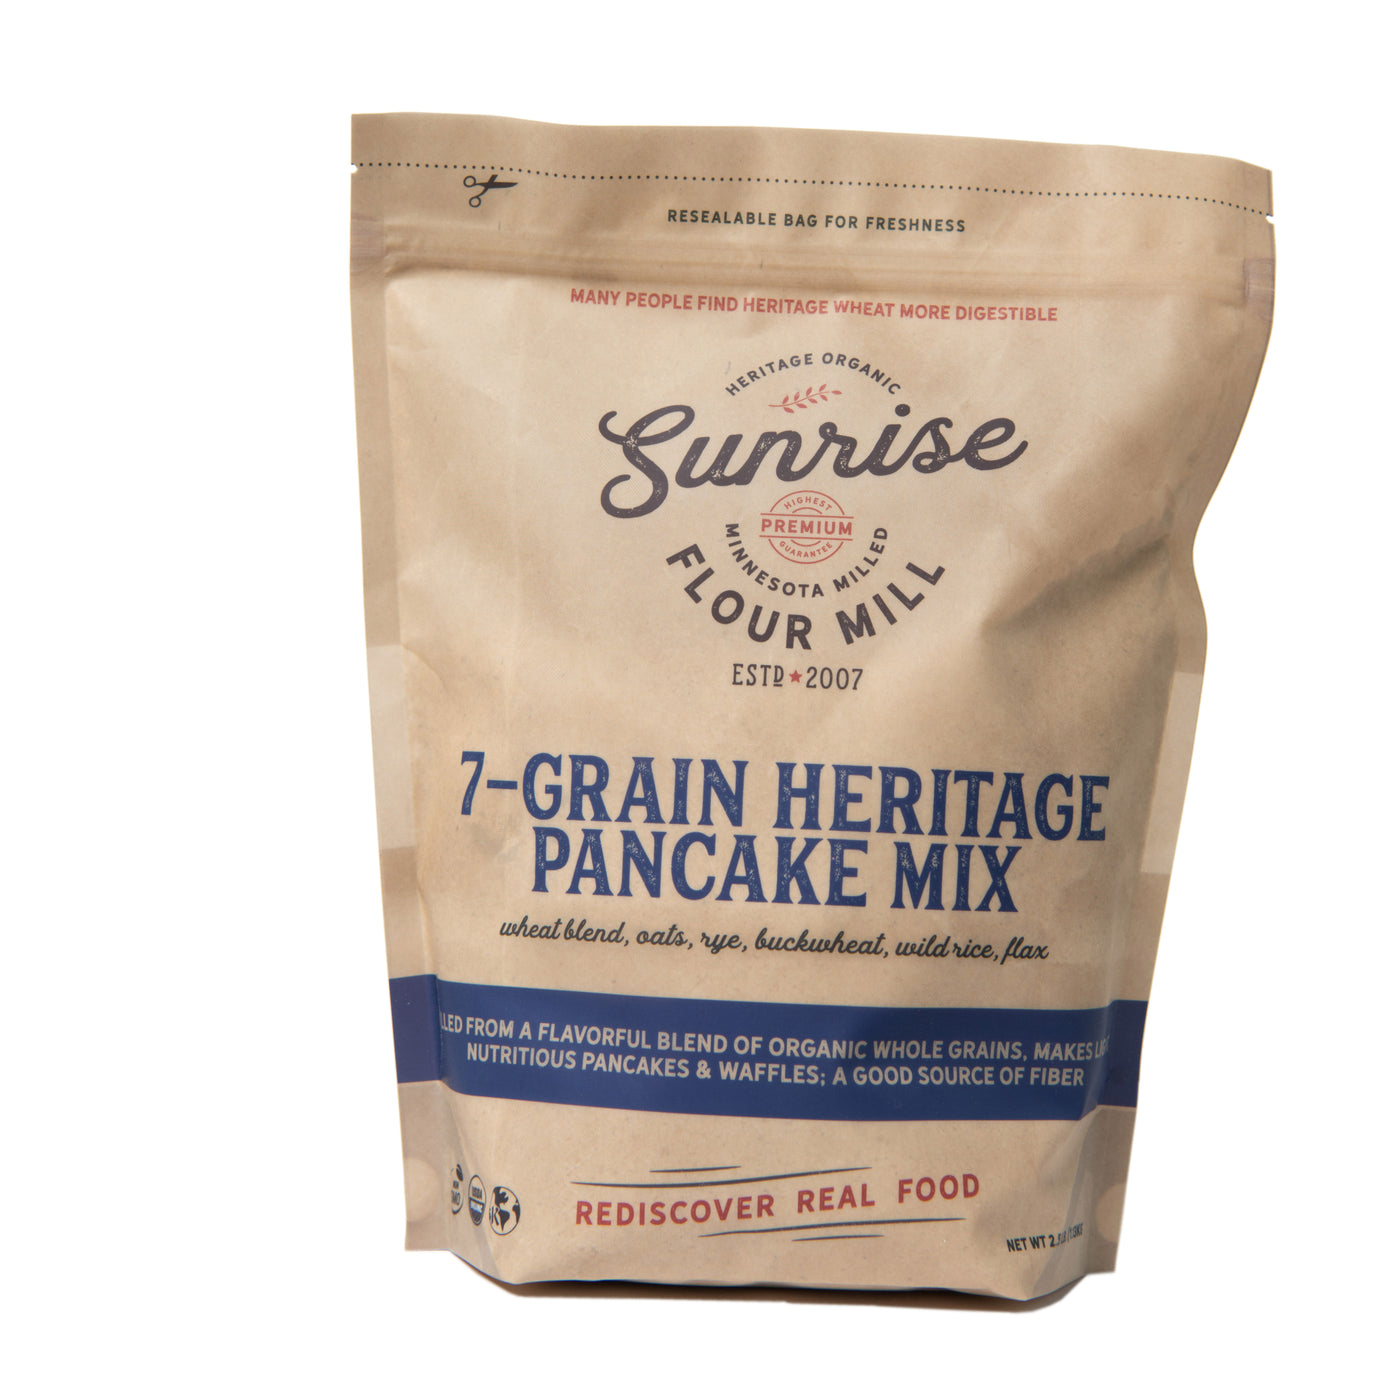 7-Grain Heritage Pancake Mix